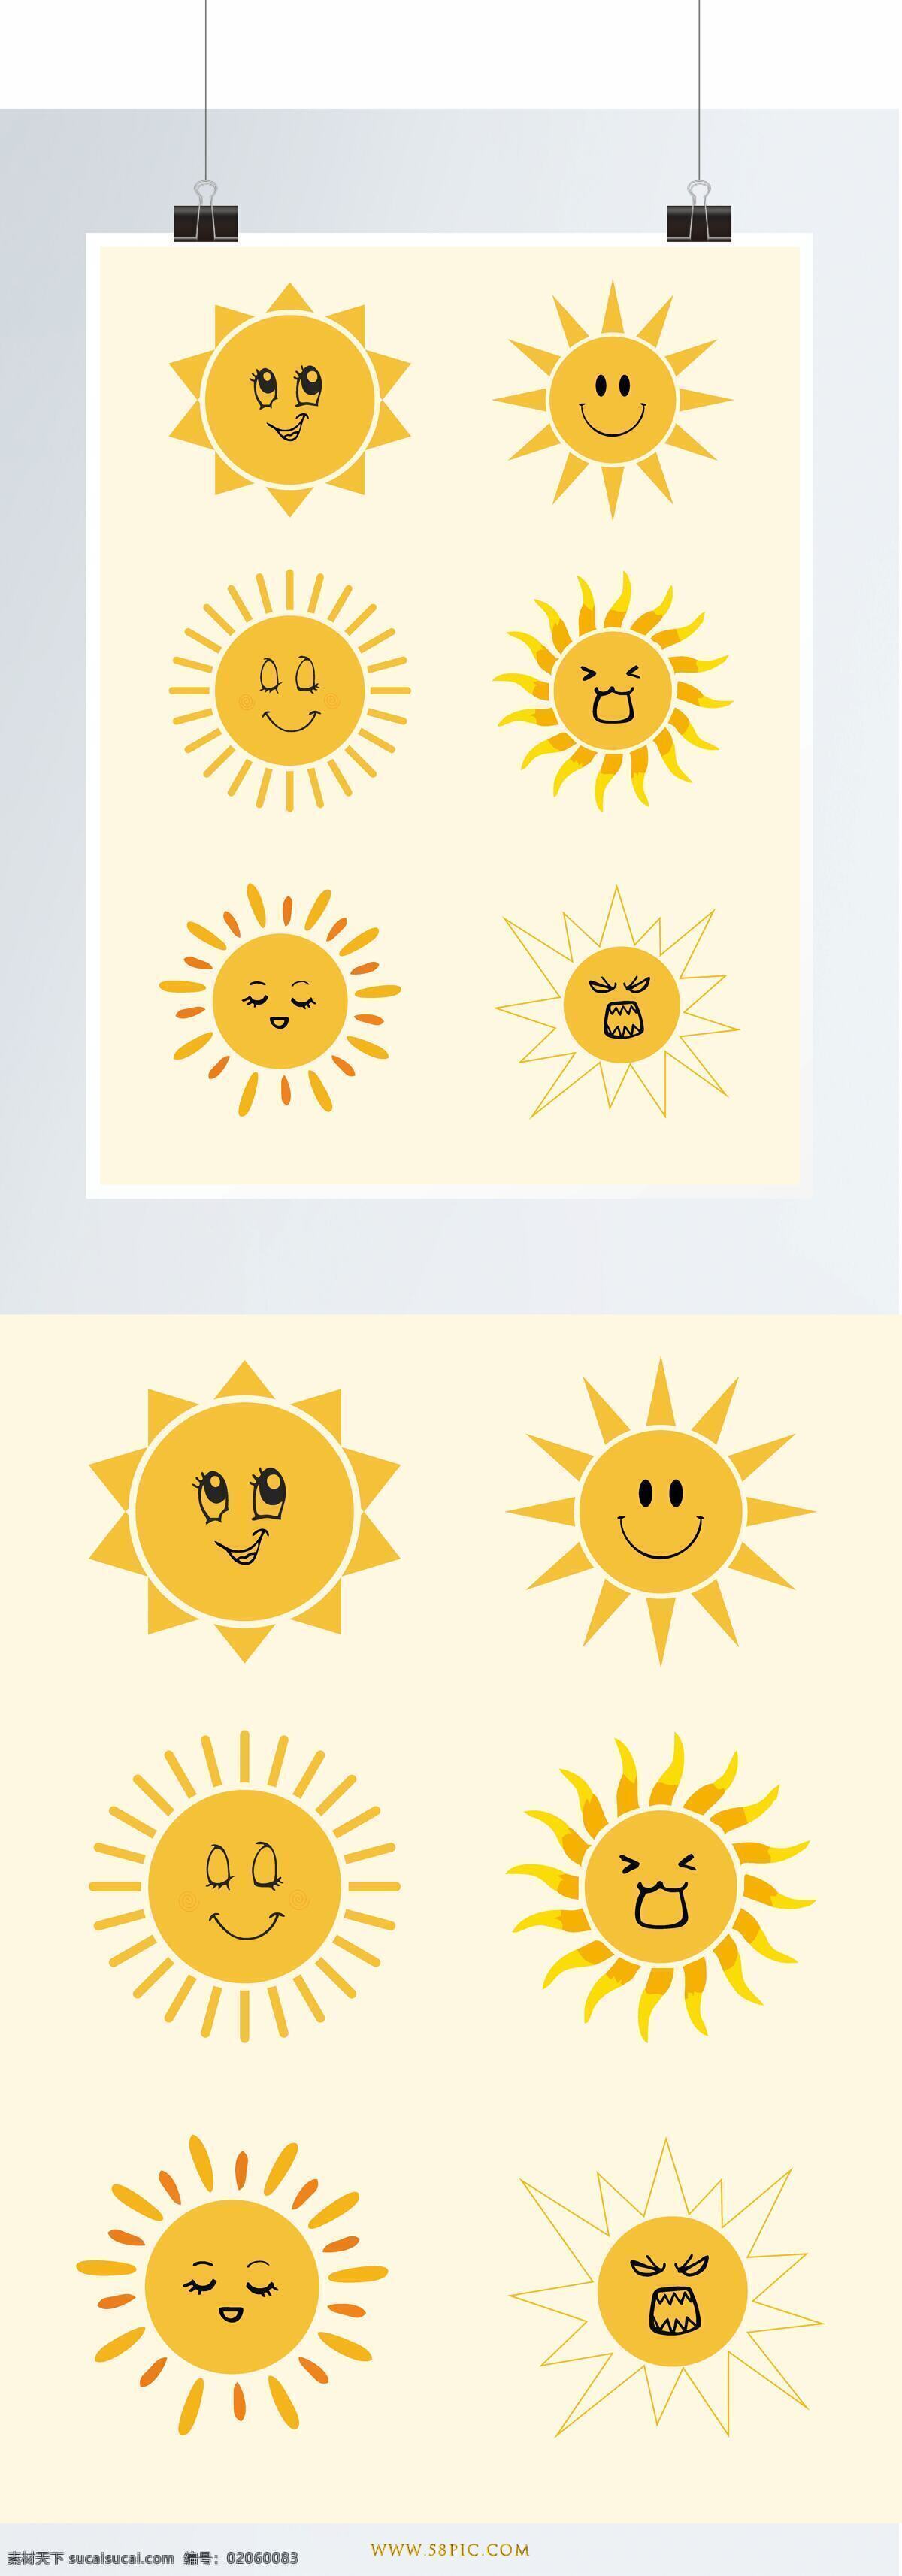 小太阳 元素 太阳 表情 阳光 黄色 矢量 夏天 设计元素